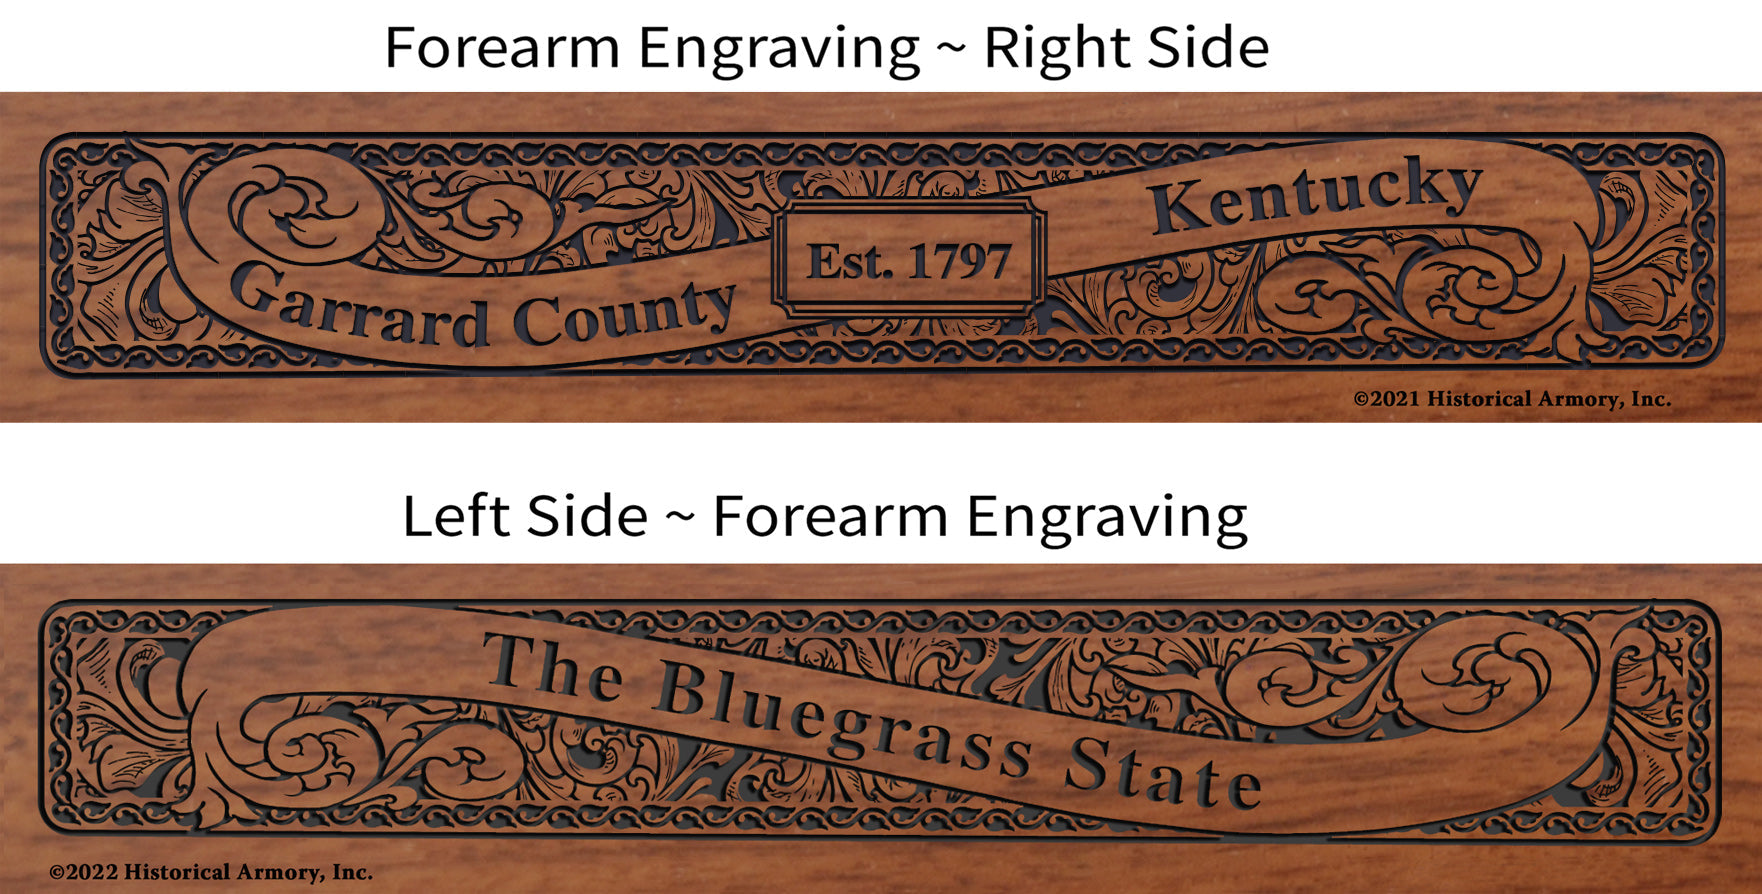 Garrard County Kentucky Engraved Rifle Forearm